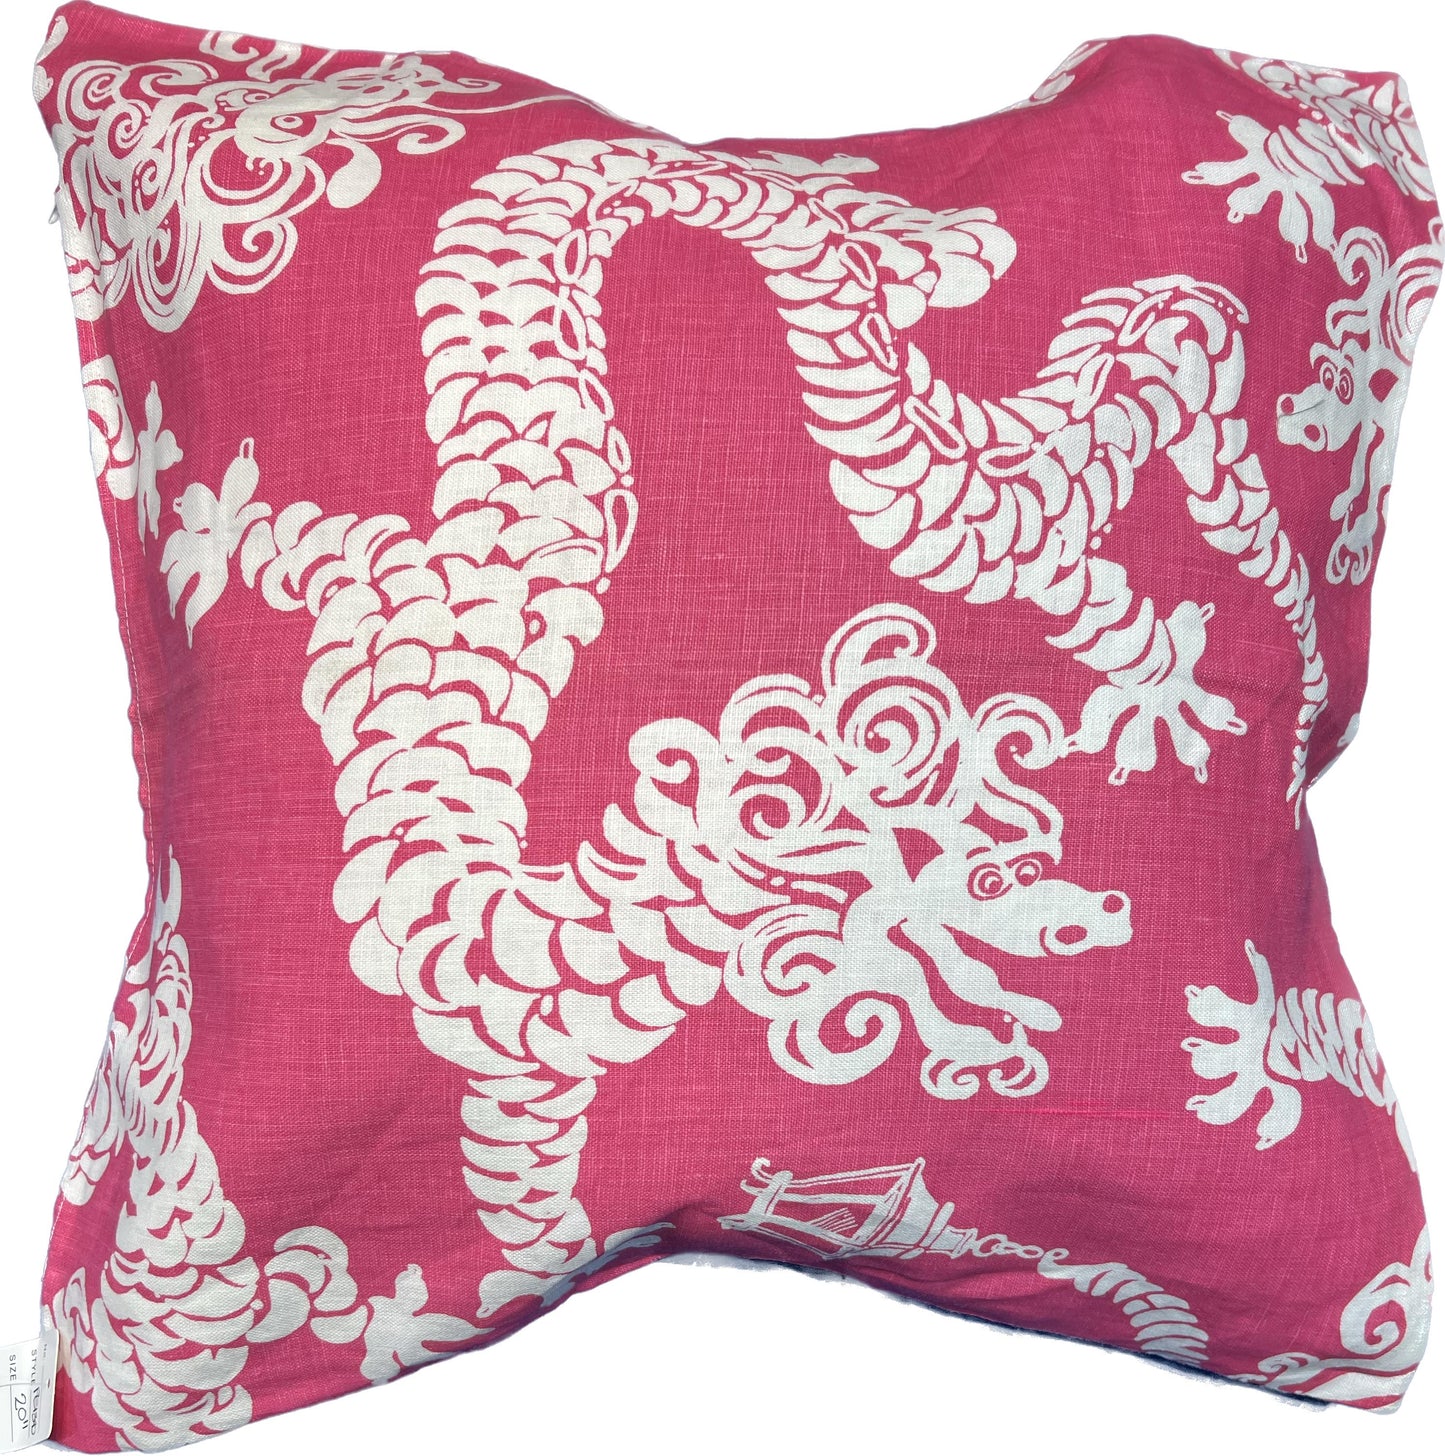 20"x20" Dragon Print Pillow Cover (Lee Jofa: 2011103 Tail Lights - 7 Daiquiri) - Lili Pulitzer farbic